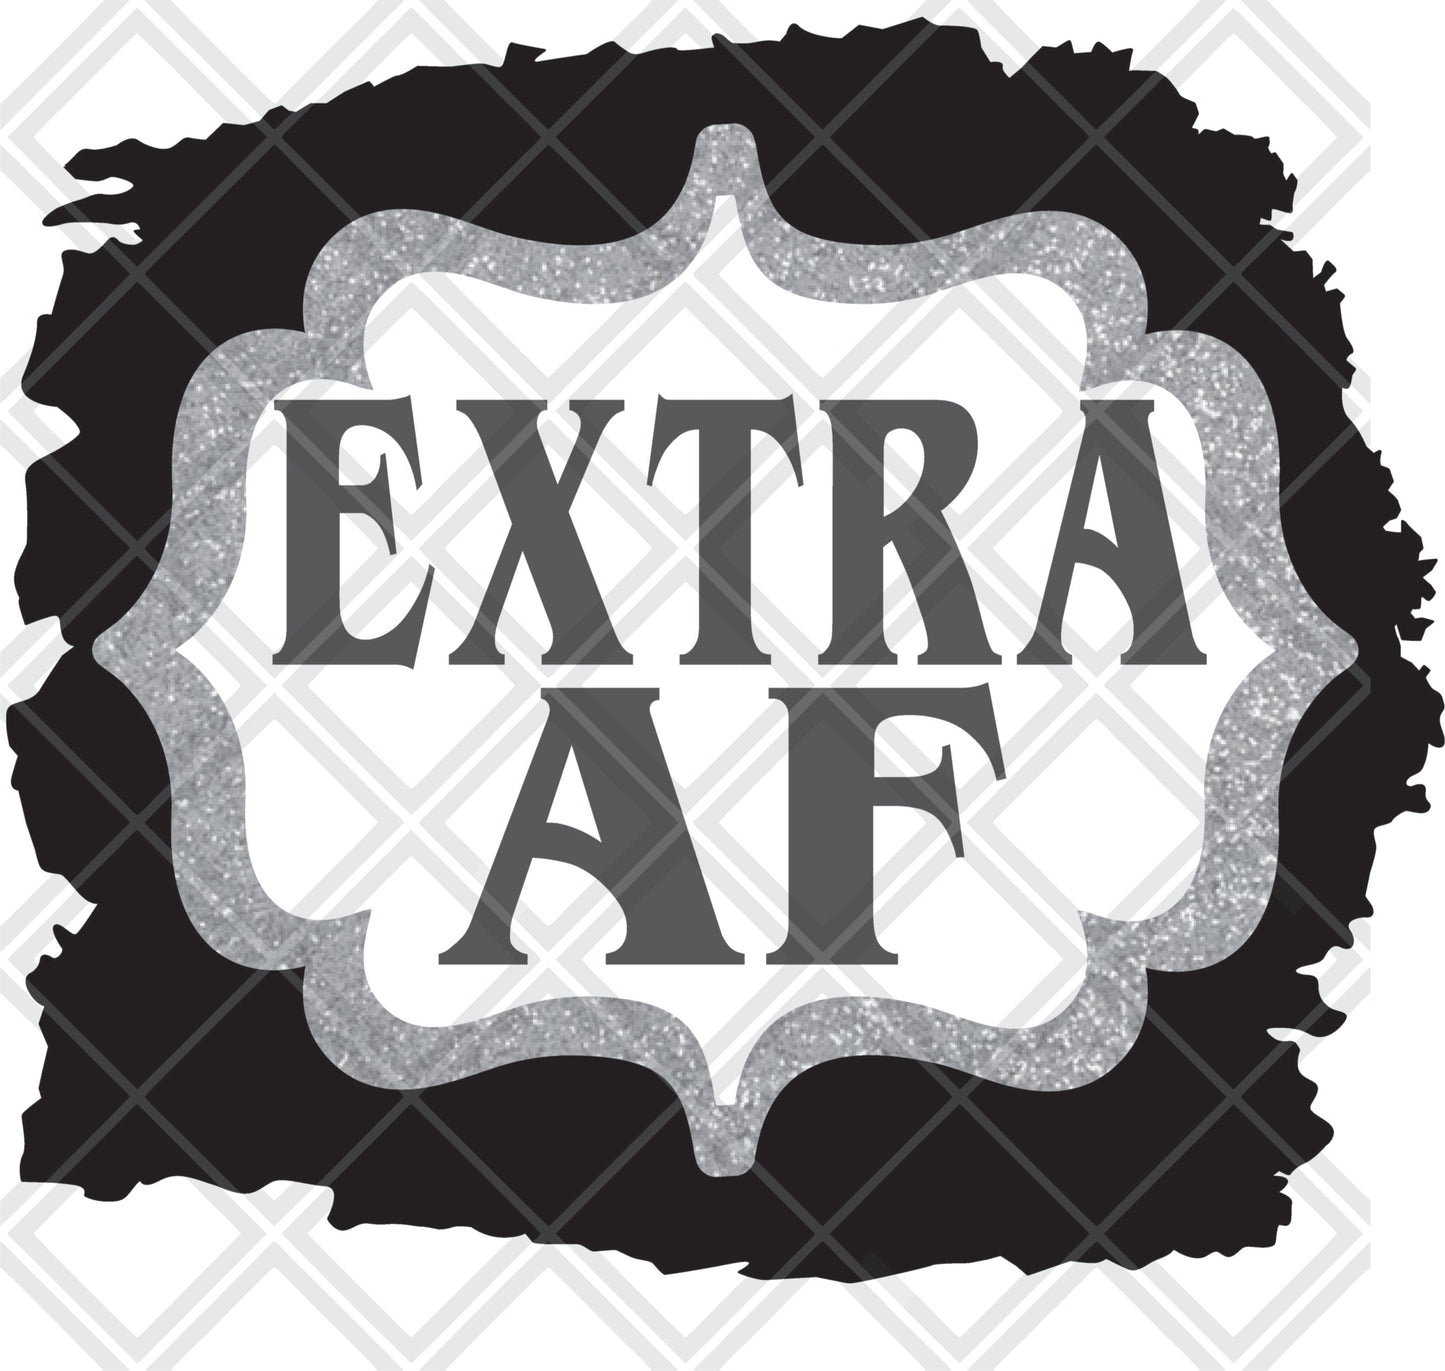 Extra AF Frame png Digital Download Instand Download